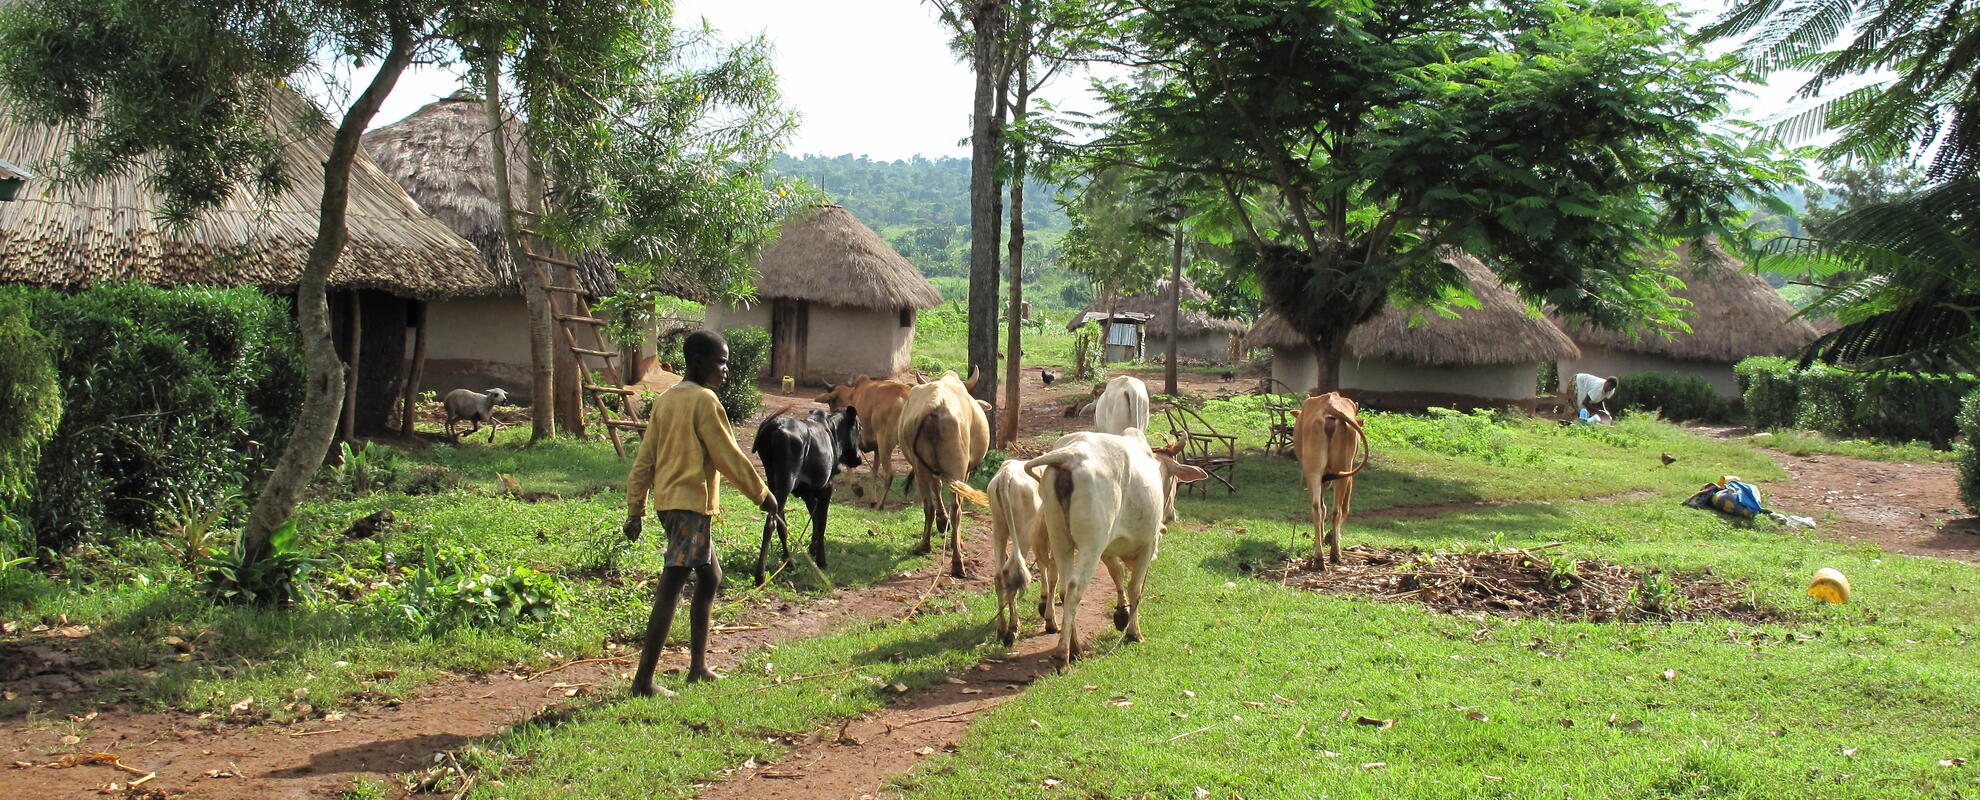 Zoonoses in livestock in Kenya